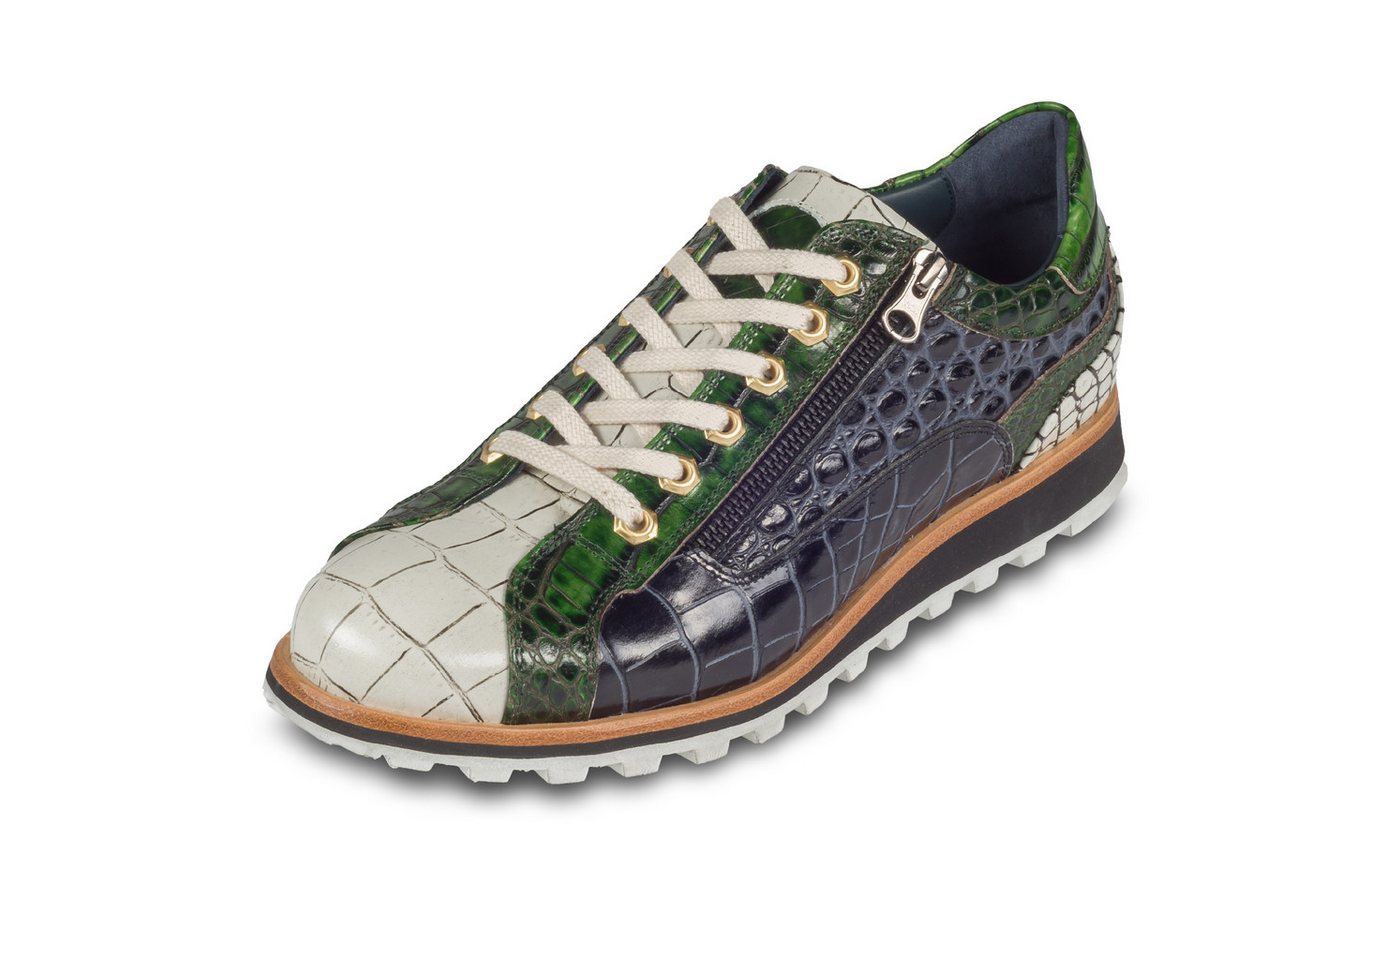 Lorenzi Leder-Sneaker grün / weiß / schwarz mit Reptil-Prägung, Reißverschluß Sneaker Handgefertigt in Italien von Lorenzi